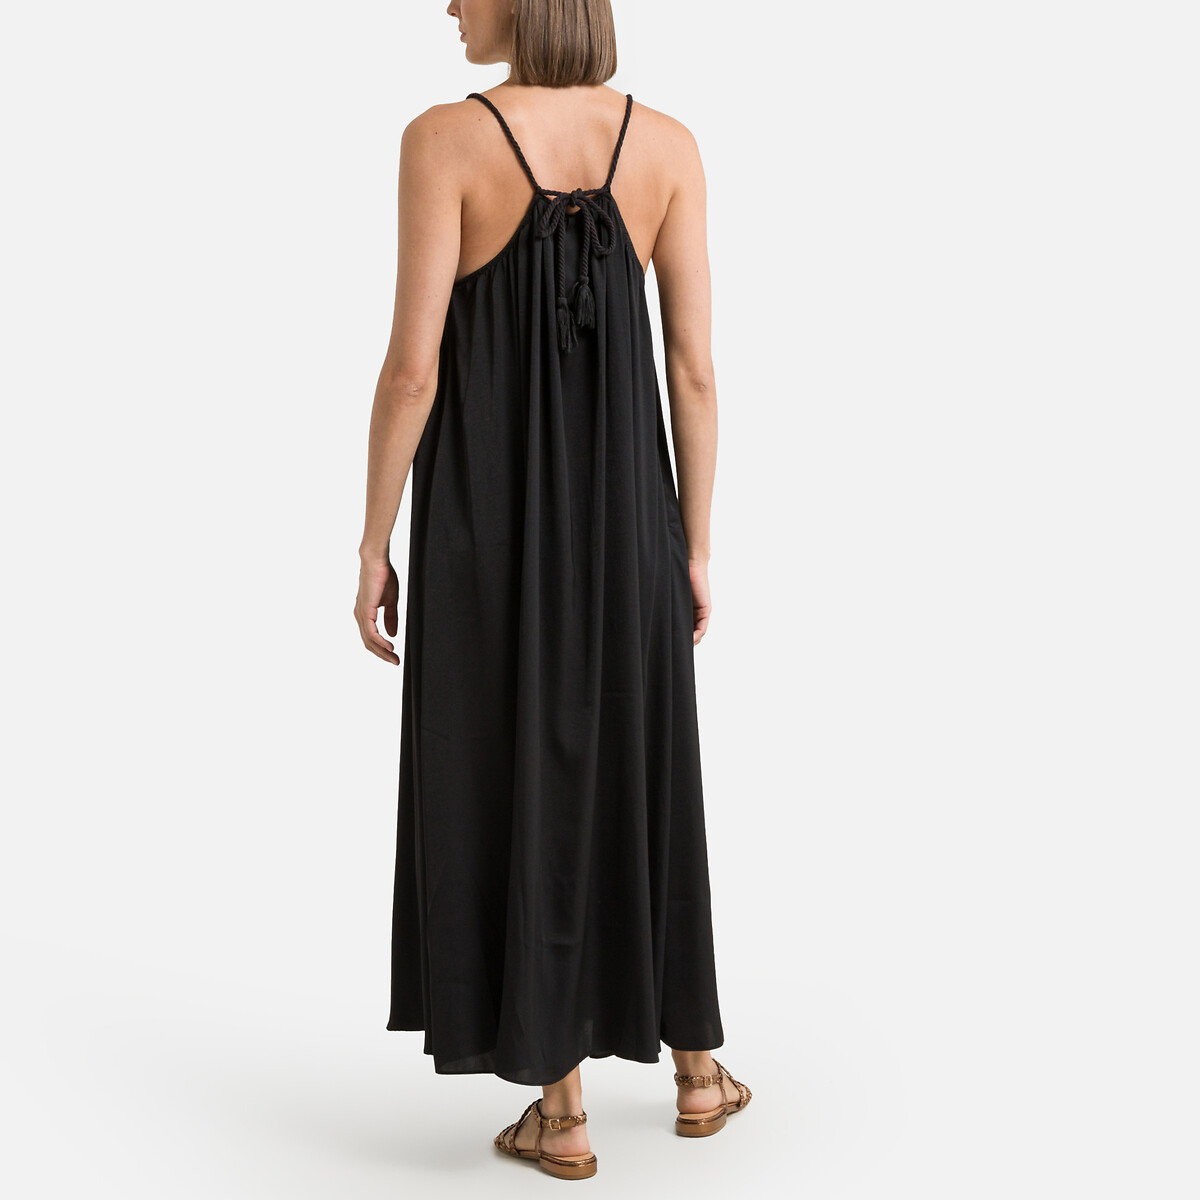 Платье Длинное на тонких бретелях 1(S) черный LaRedoute, размер 1(S) Платье Длинное на тонких бретелях 1(S) черный - фото 4